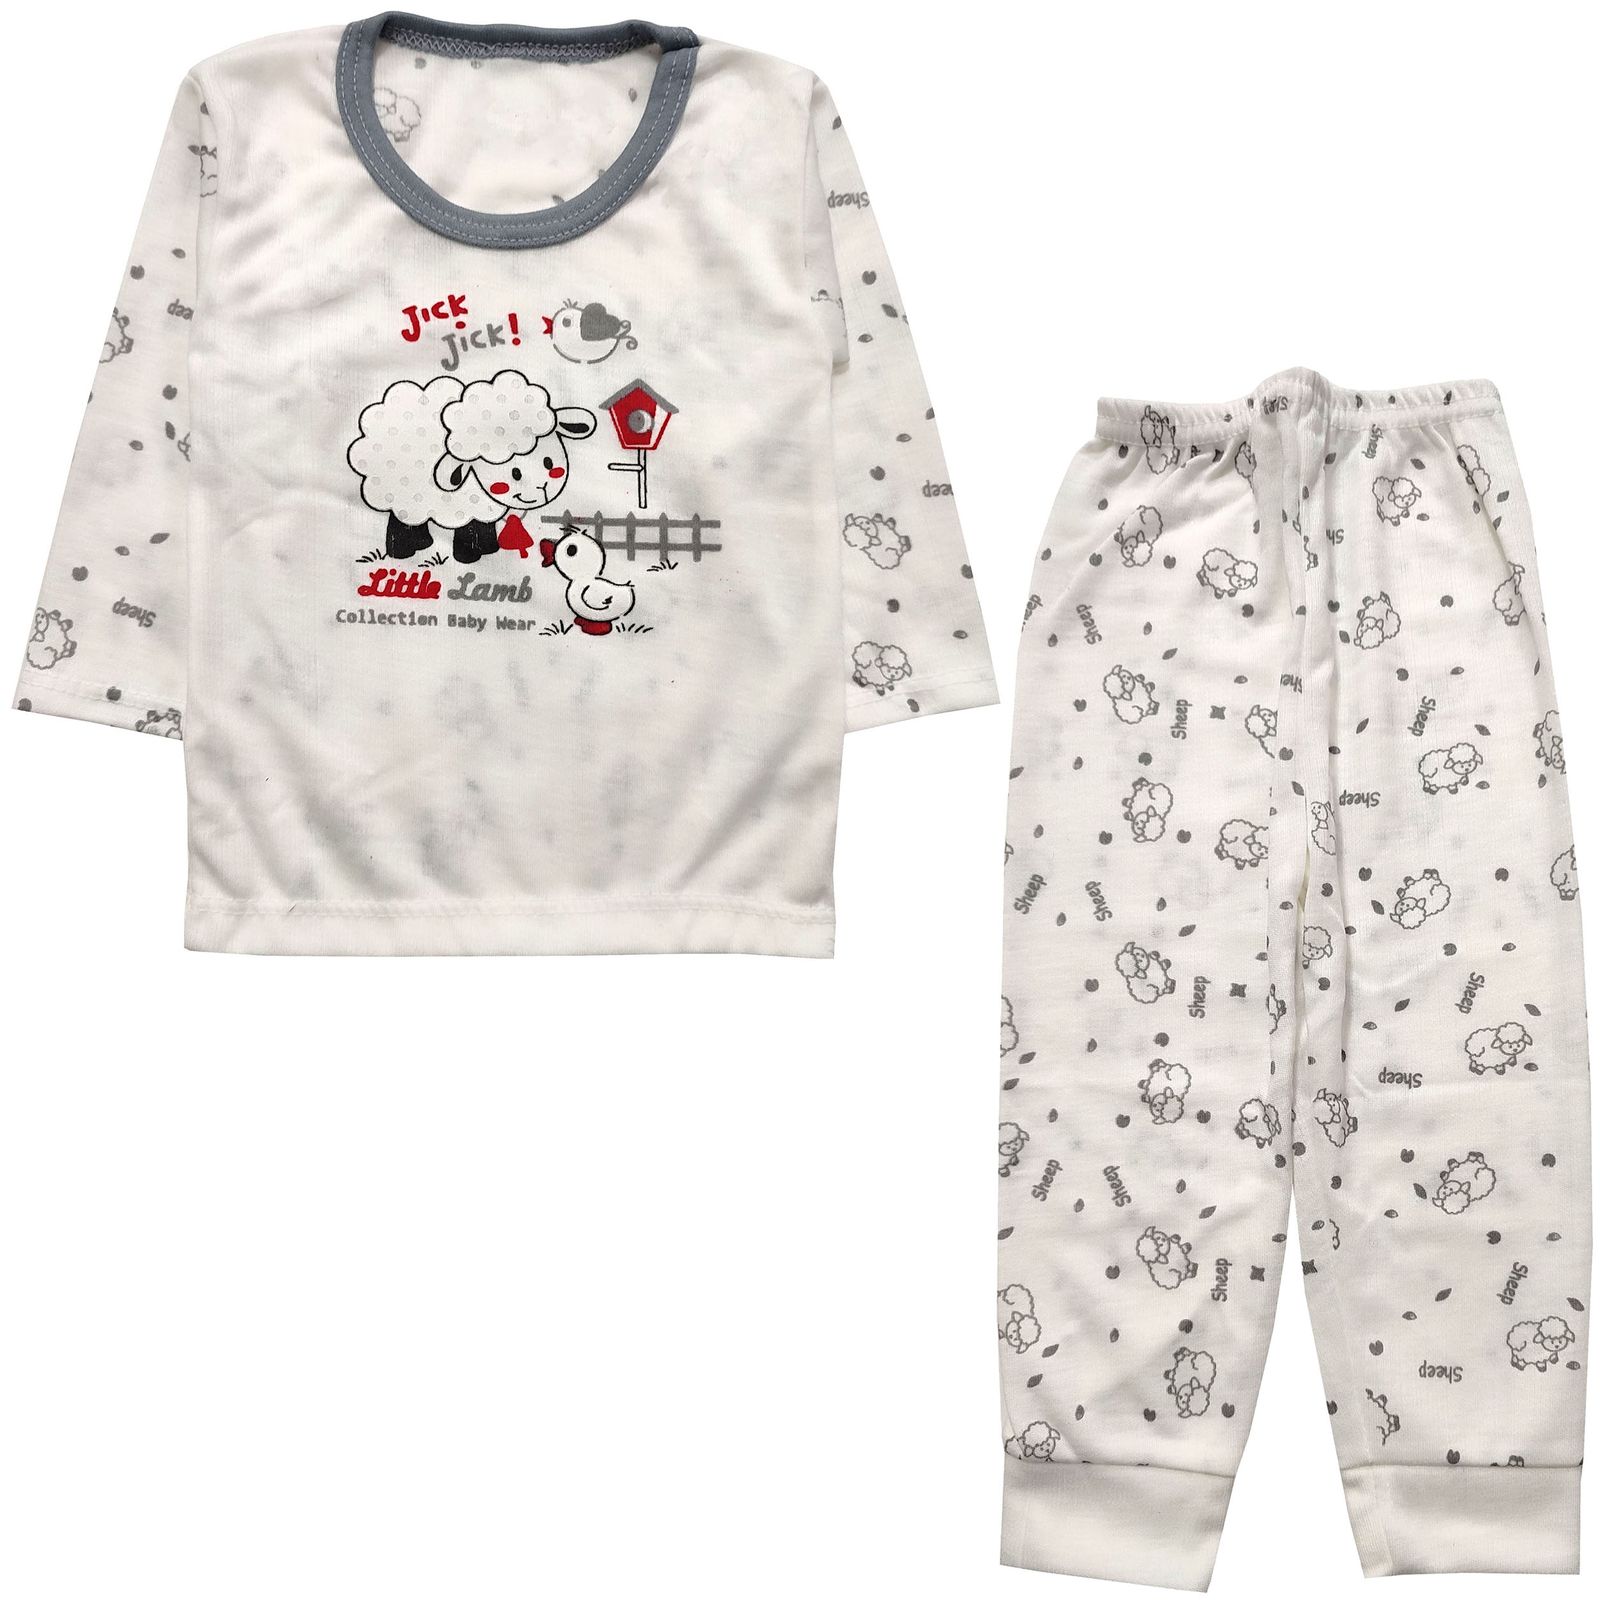 ست تی شرت و شلوار نوزادی مدل ببعی و اردک کد 3888 -  - 1